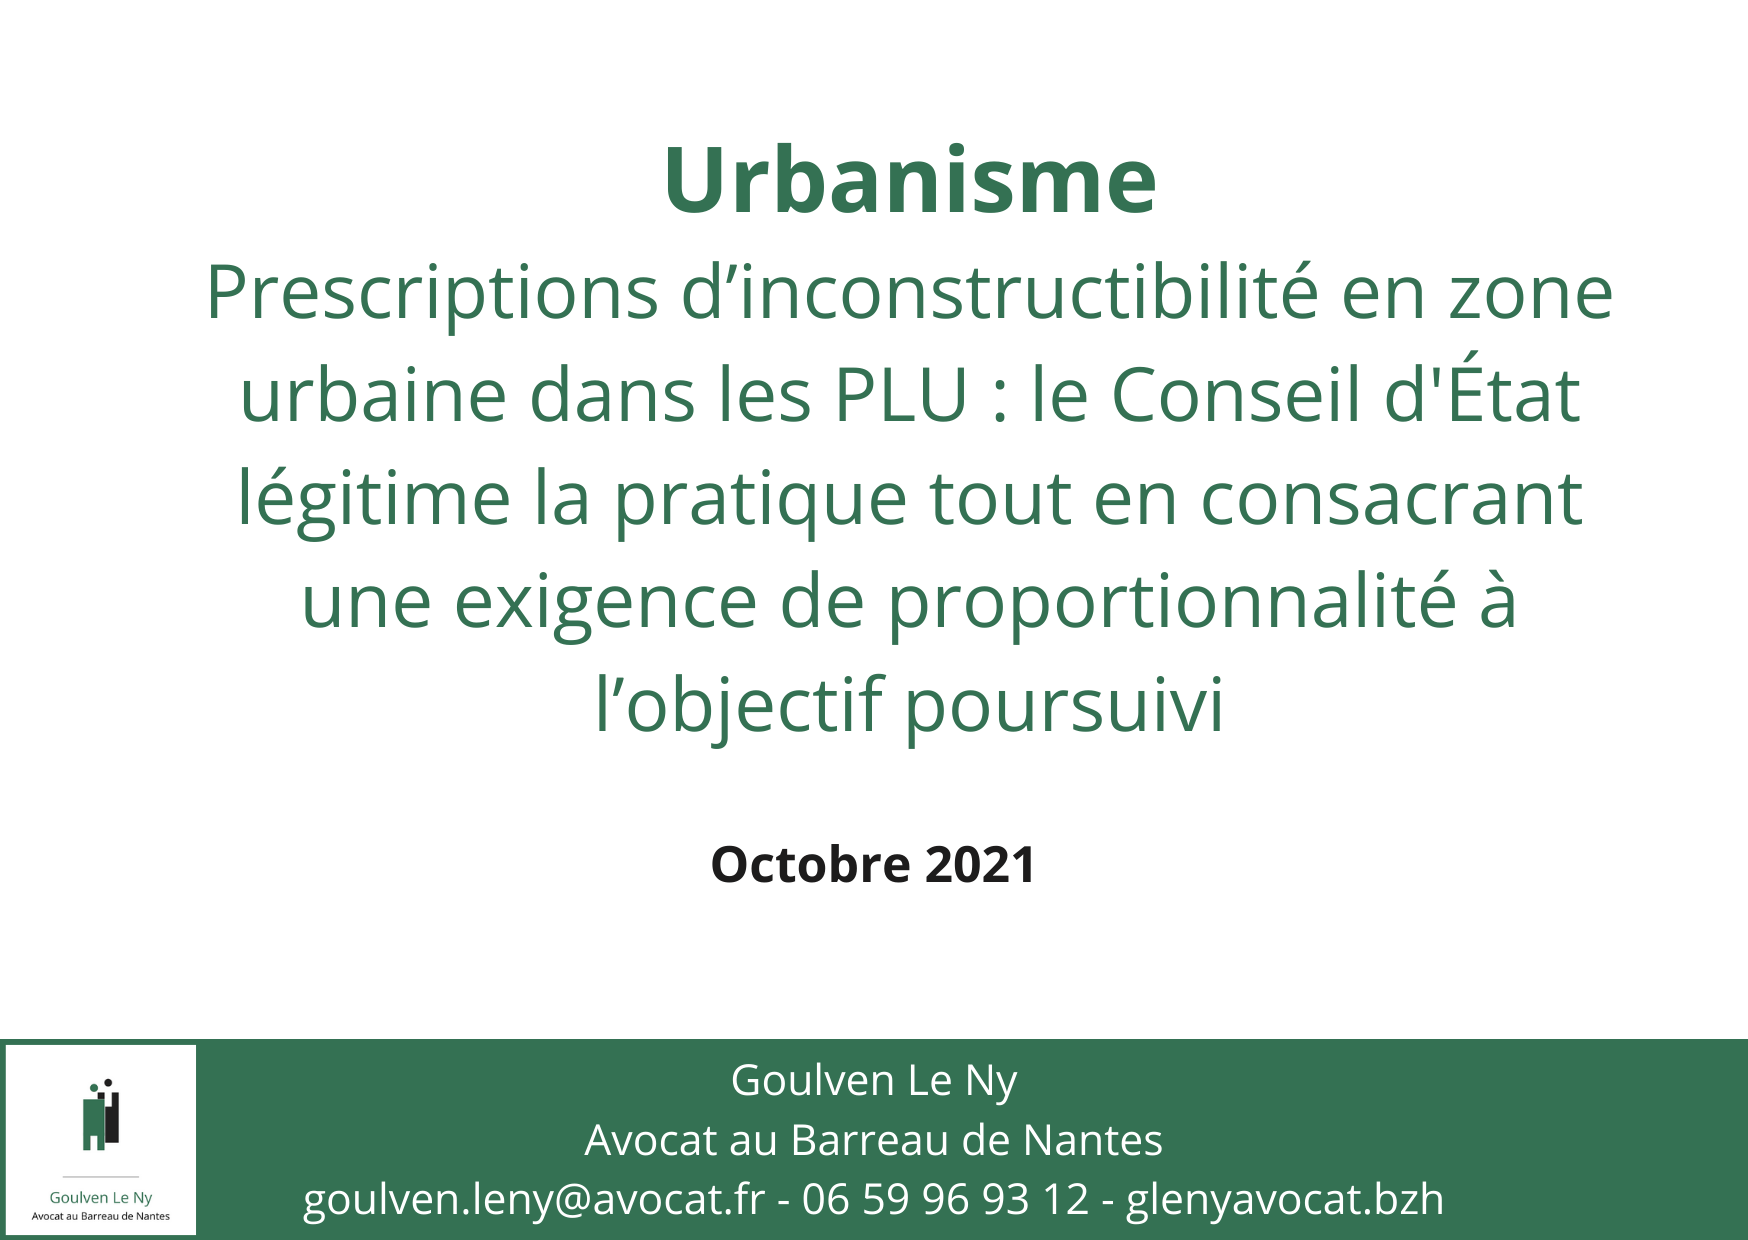 Prescriptions d’inconstructibilité en zone urbaine dans les PLU : le Conseil d'État légitime la pratique tout en consacrant une exigence de proportionnalité à l’objectif poursuivi